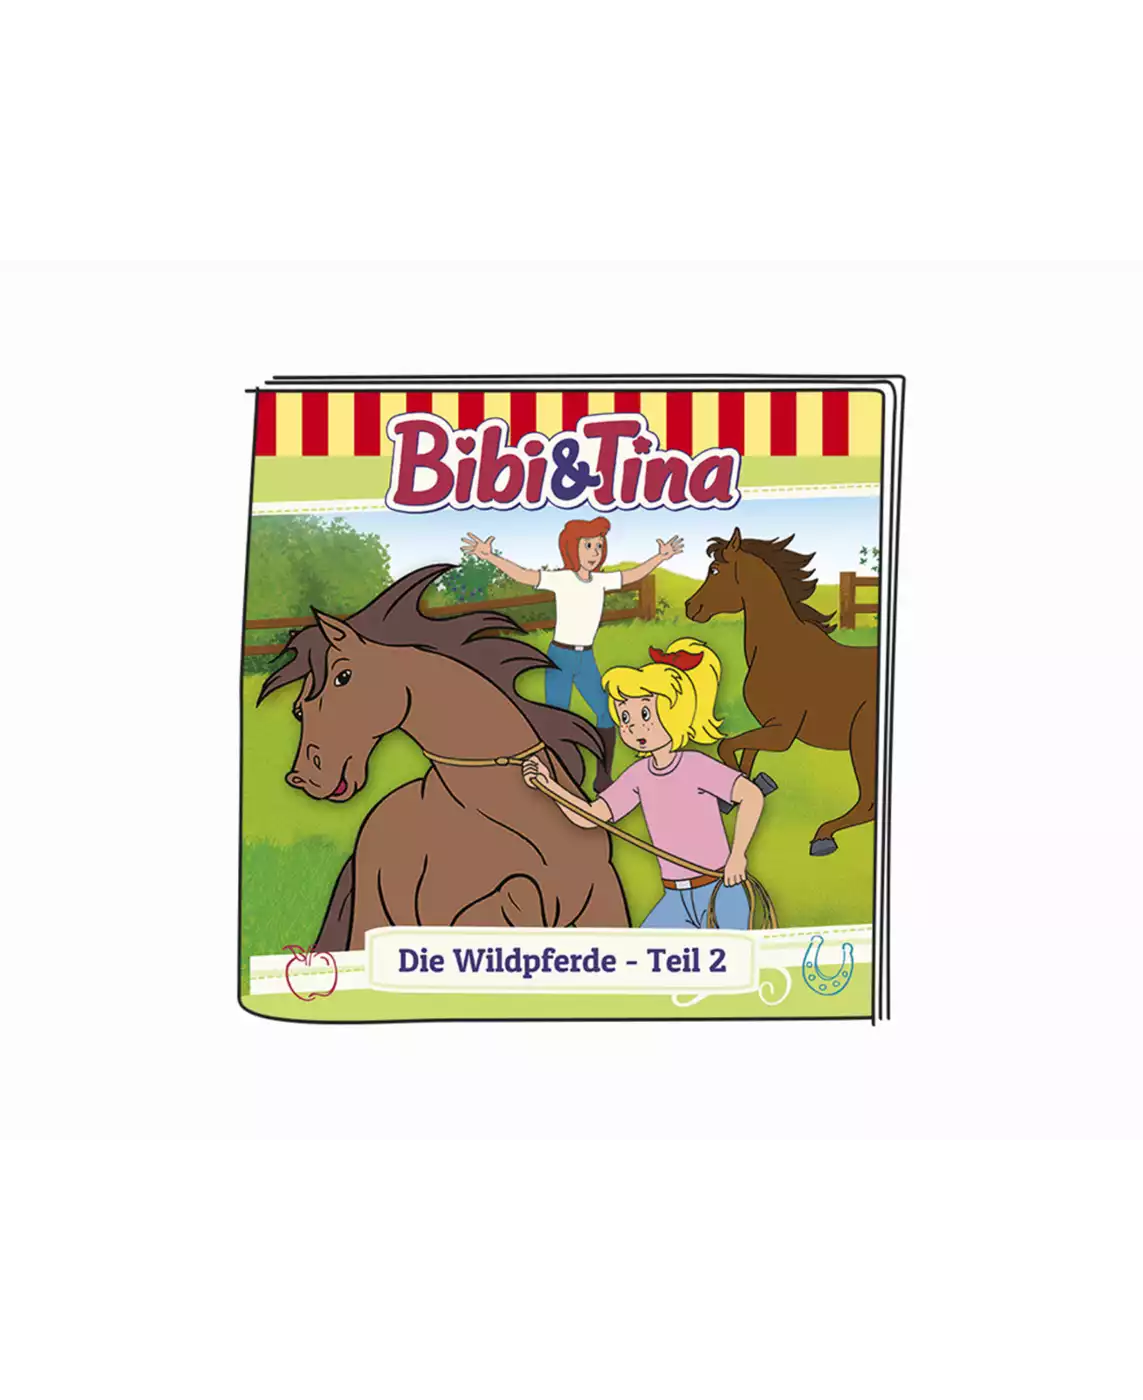 Bibi und Tina - Die Wildpferde Teil 2 tonies 2000572891400 5